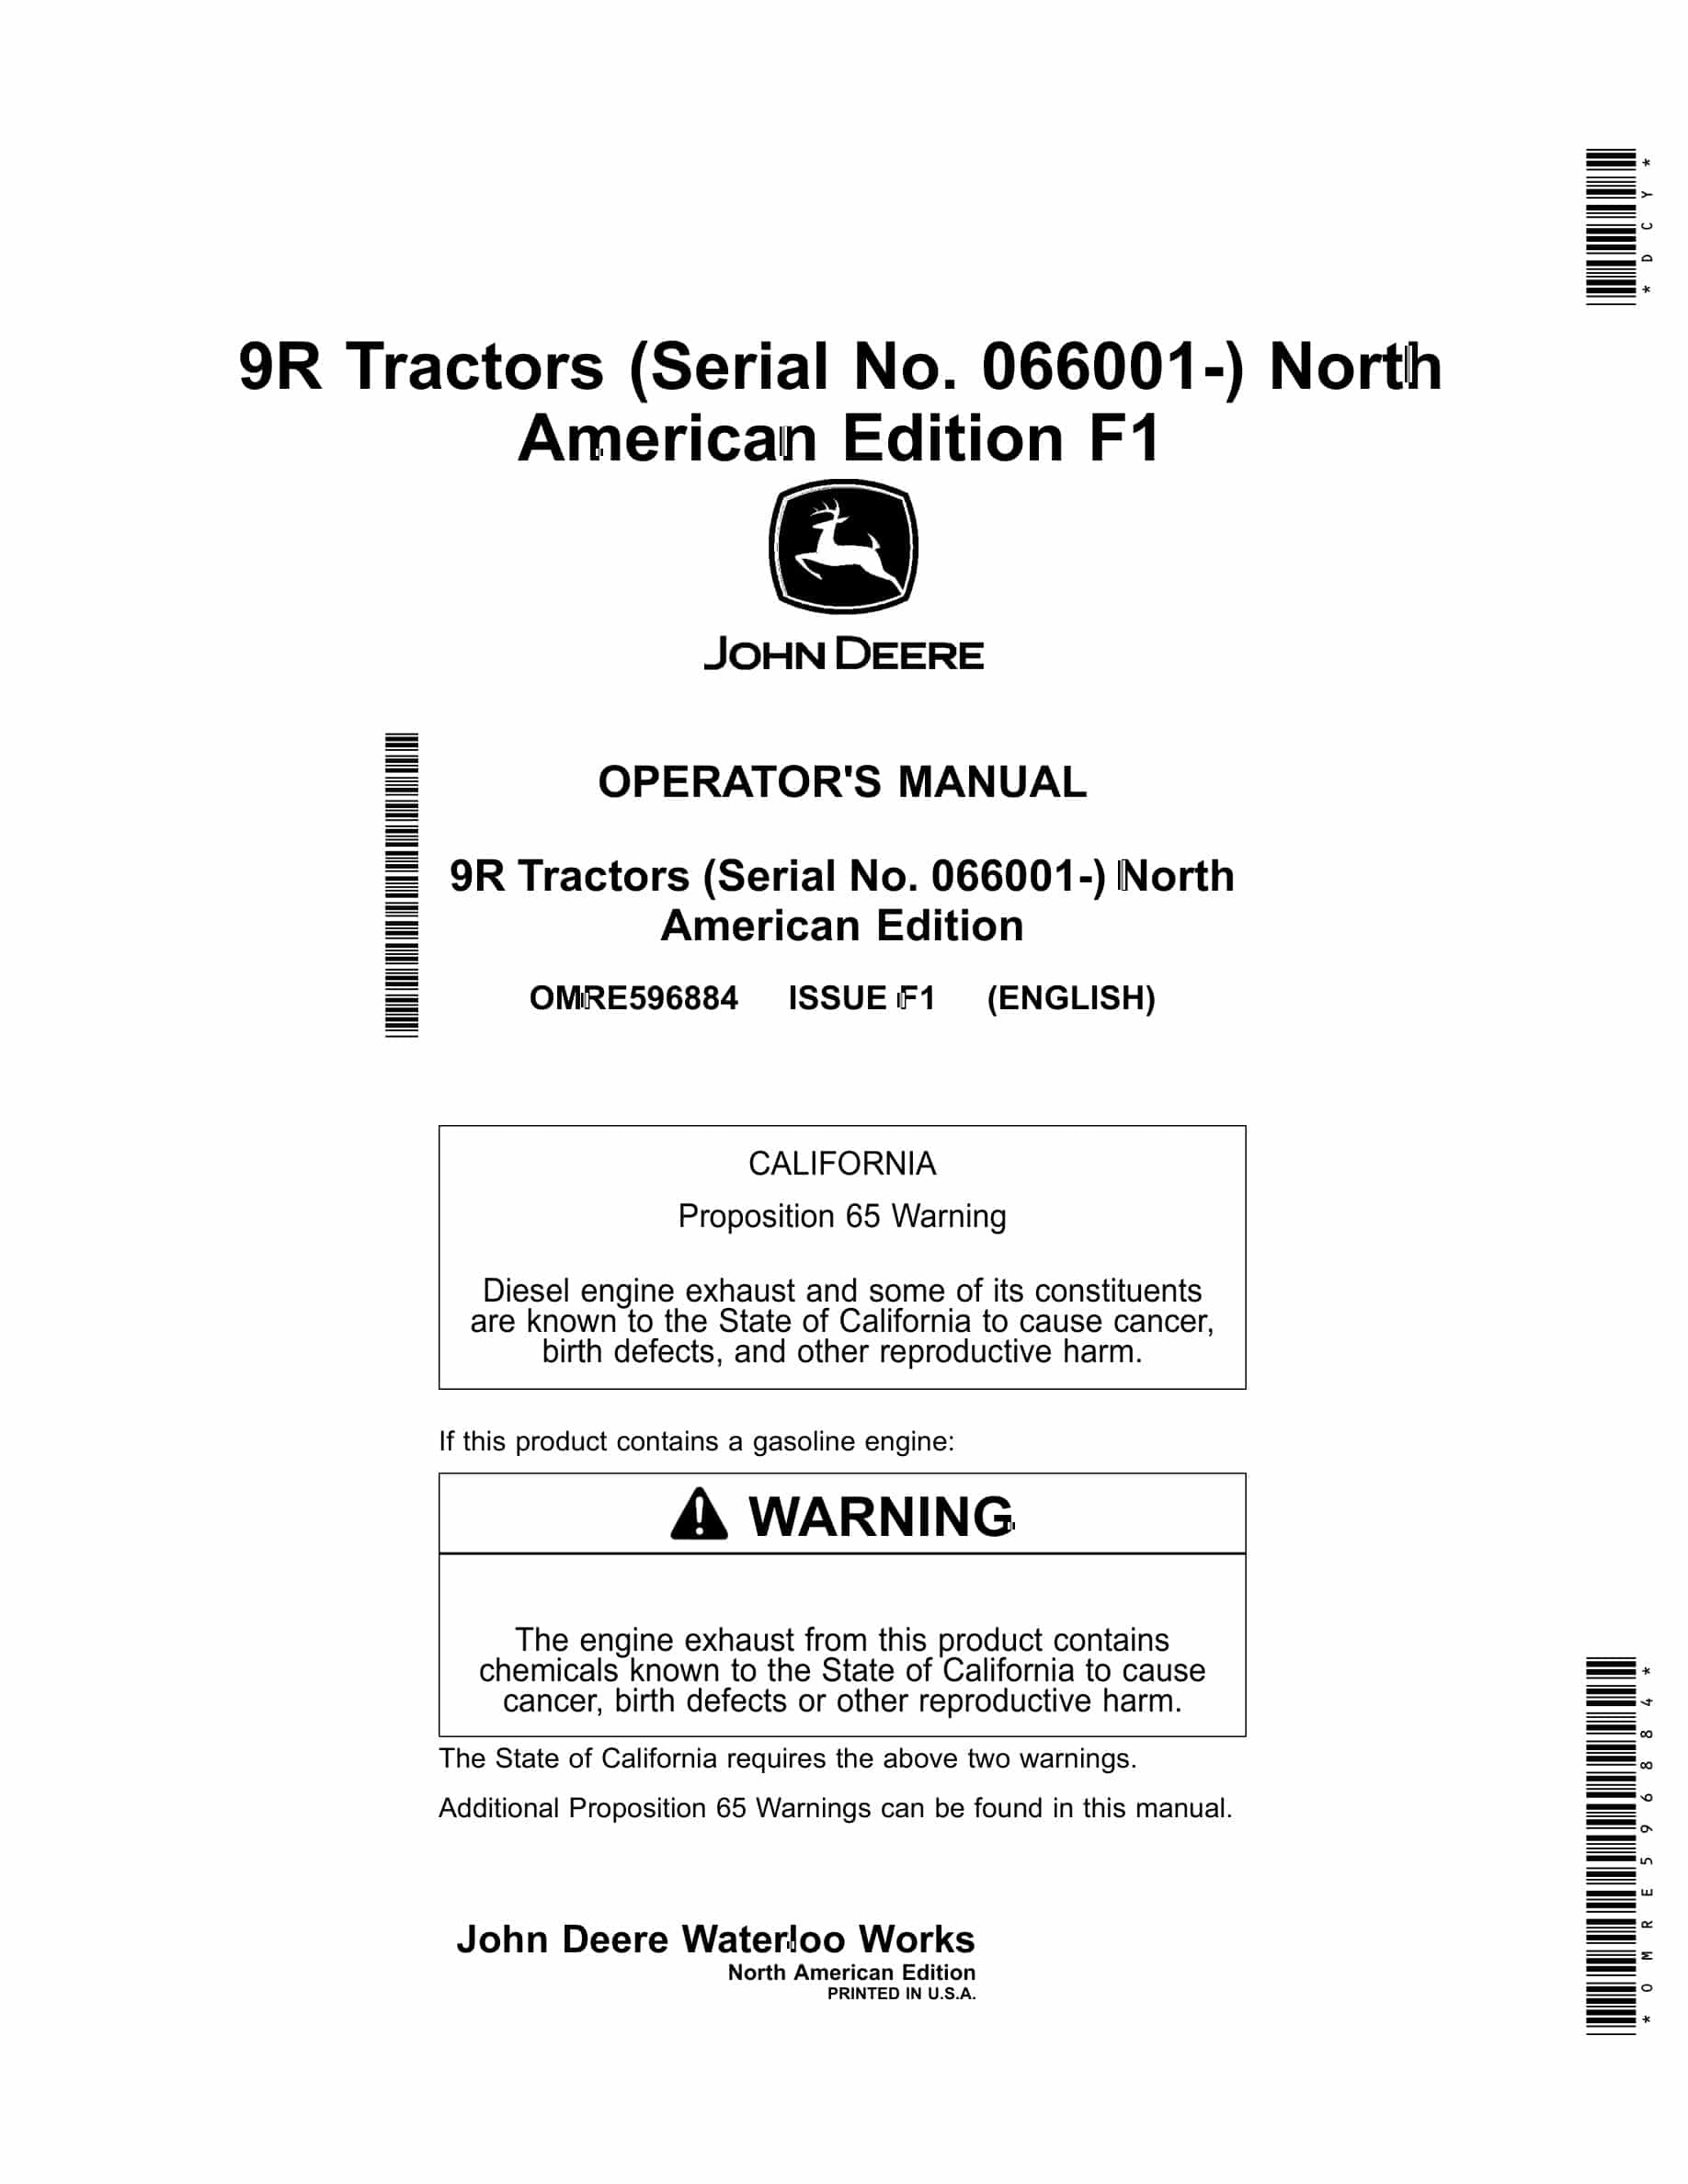 John Deere 9R Tractor Operator Manual OMRE596884-1